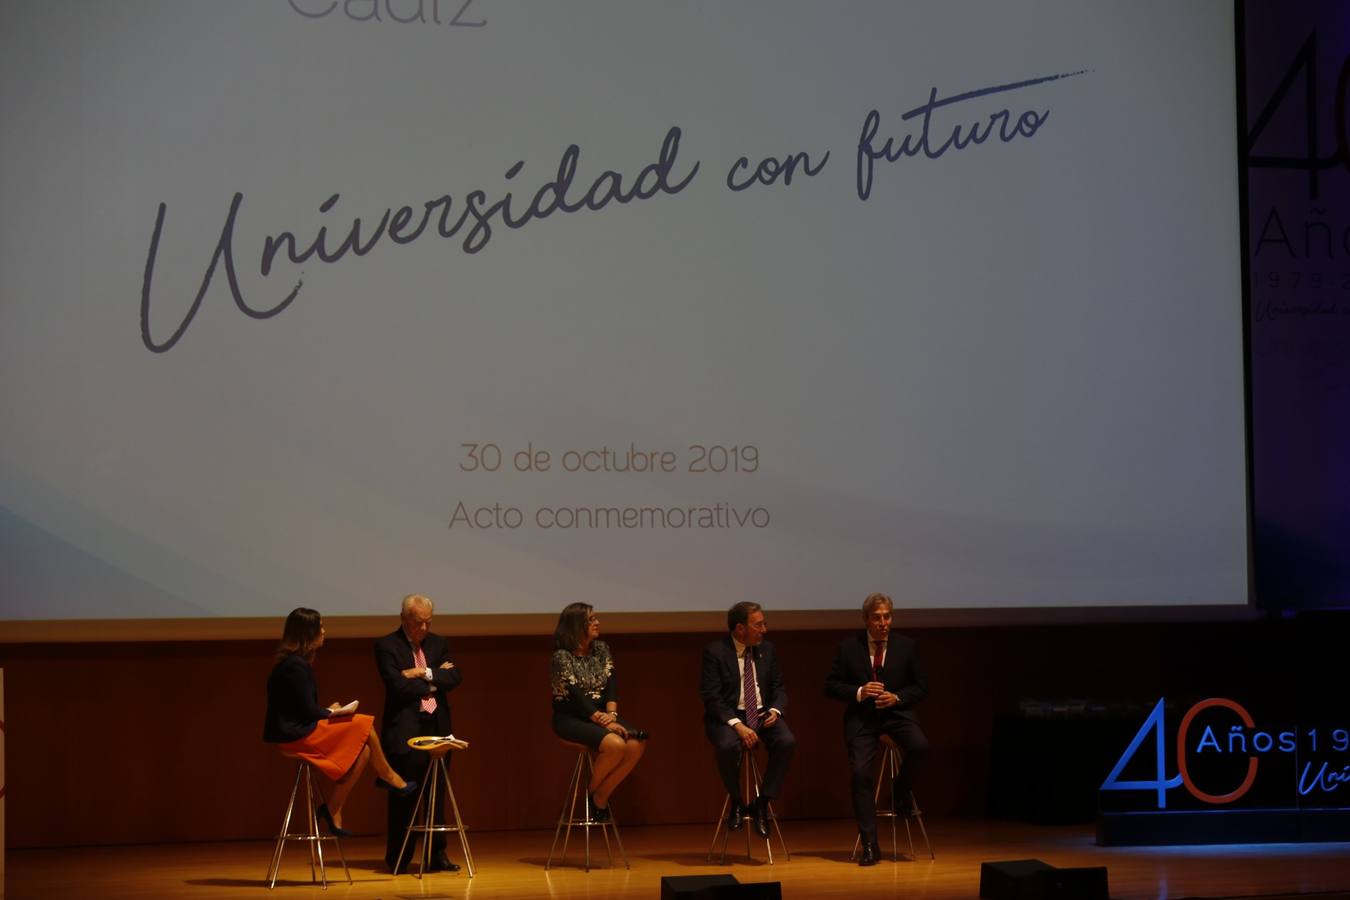 FOTOS: La Universidad de Cádiz cumple 40 años